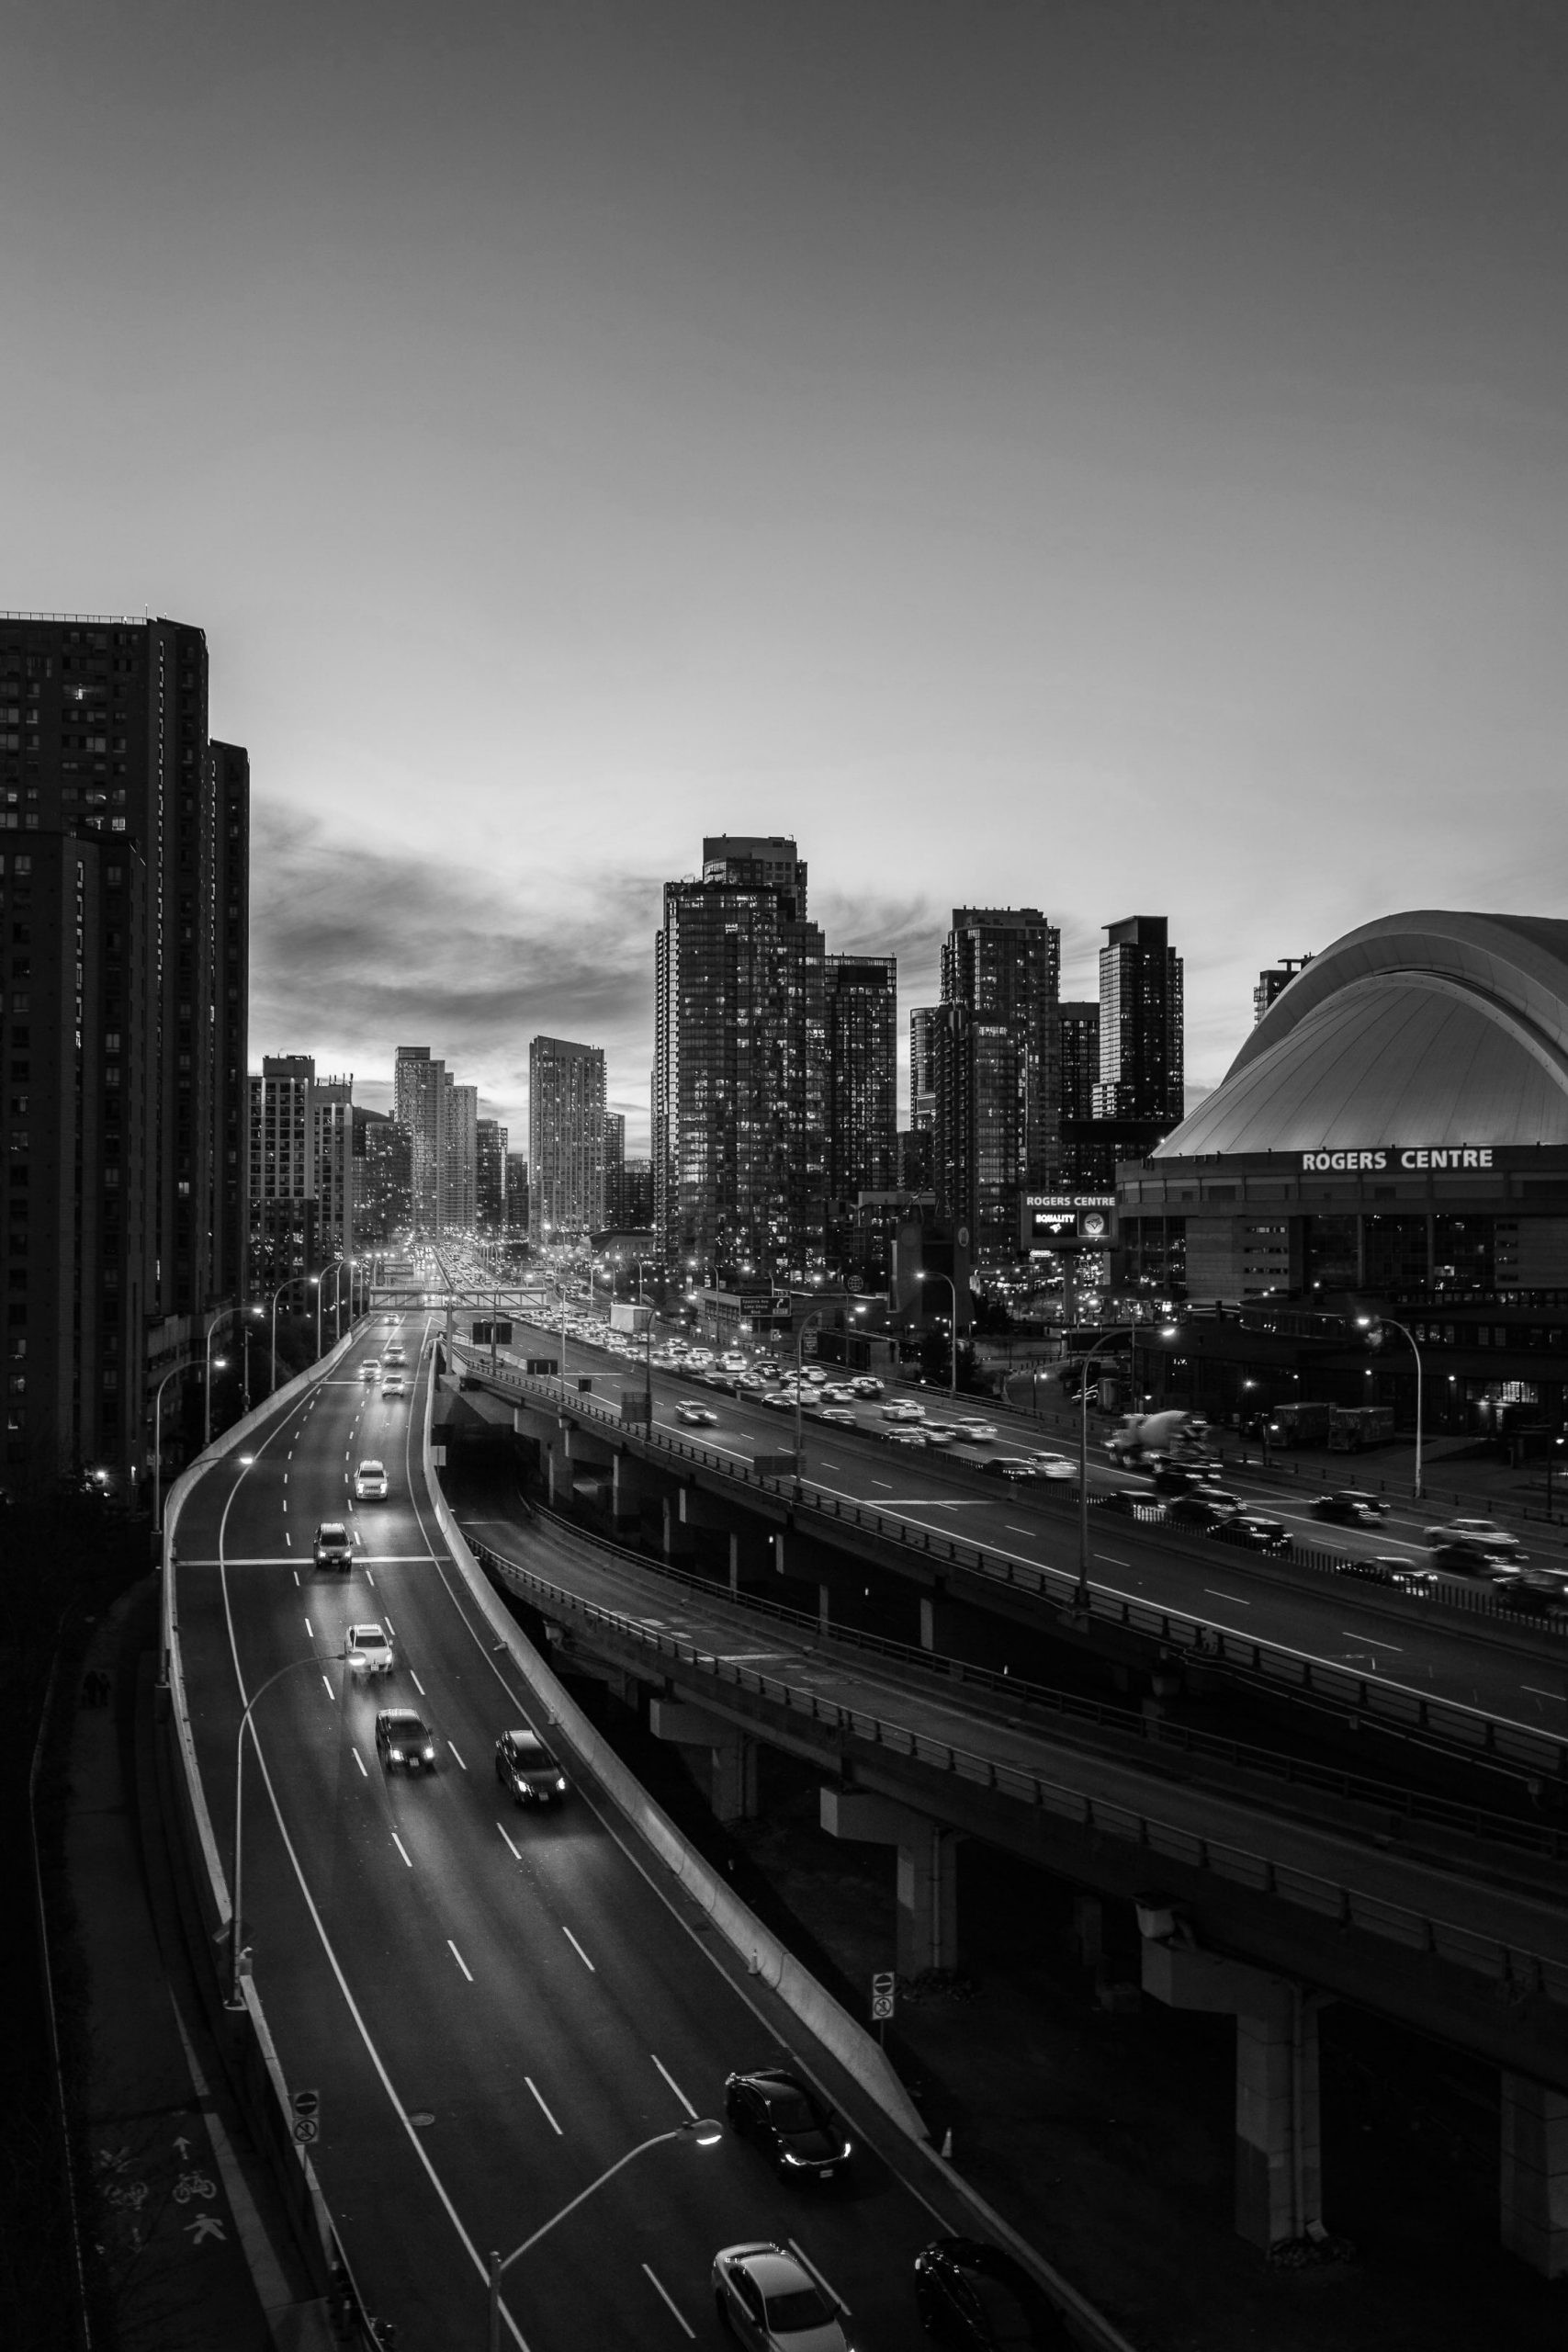 Toronto Gardiner Expressway